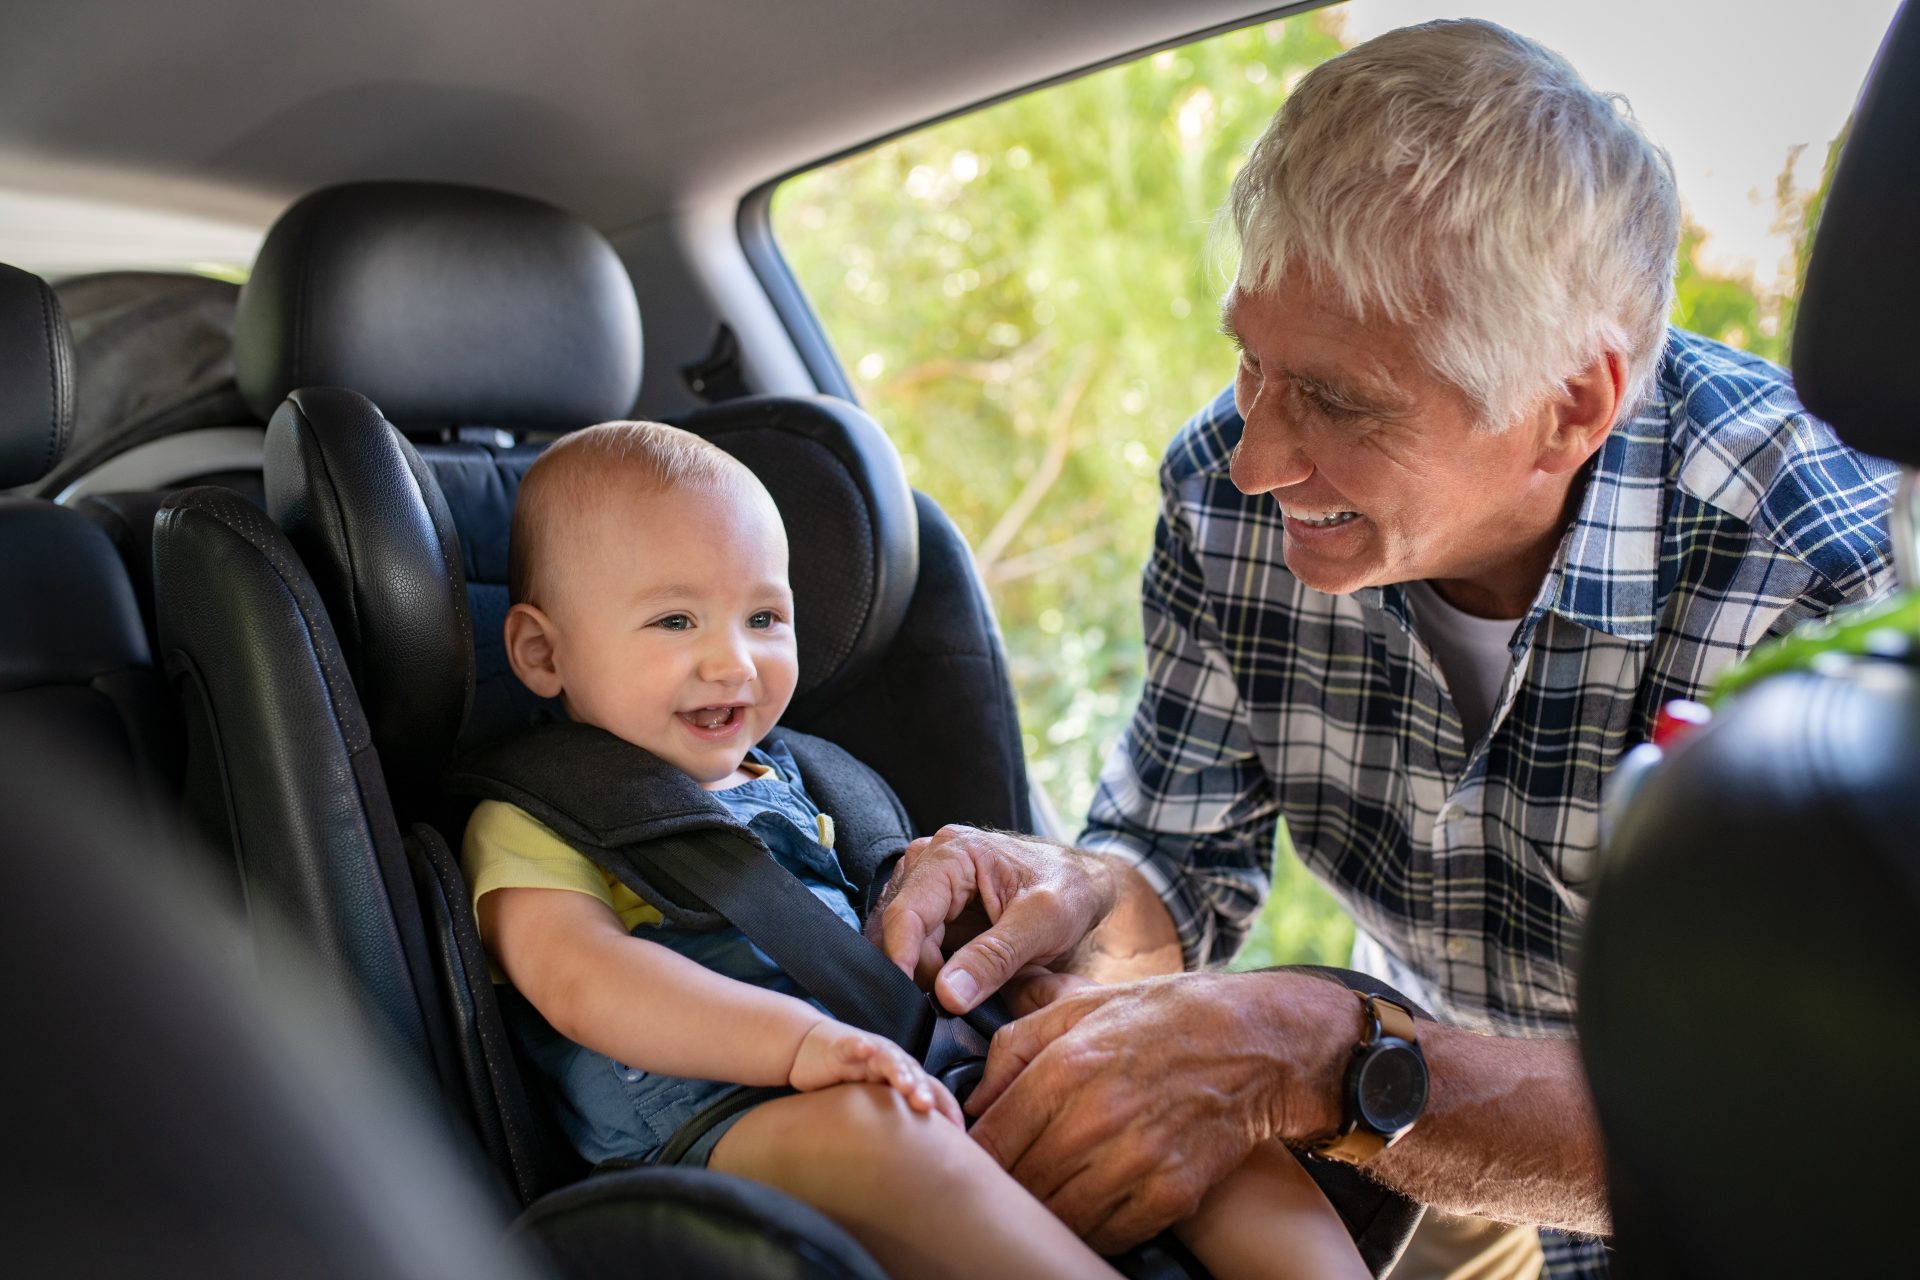 Man Fasten Seat Belt For Cute Toddler 2021 08 26 15 34 43 Utc